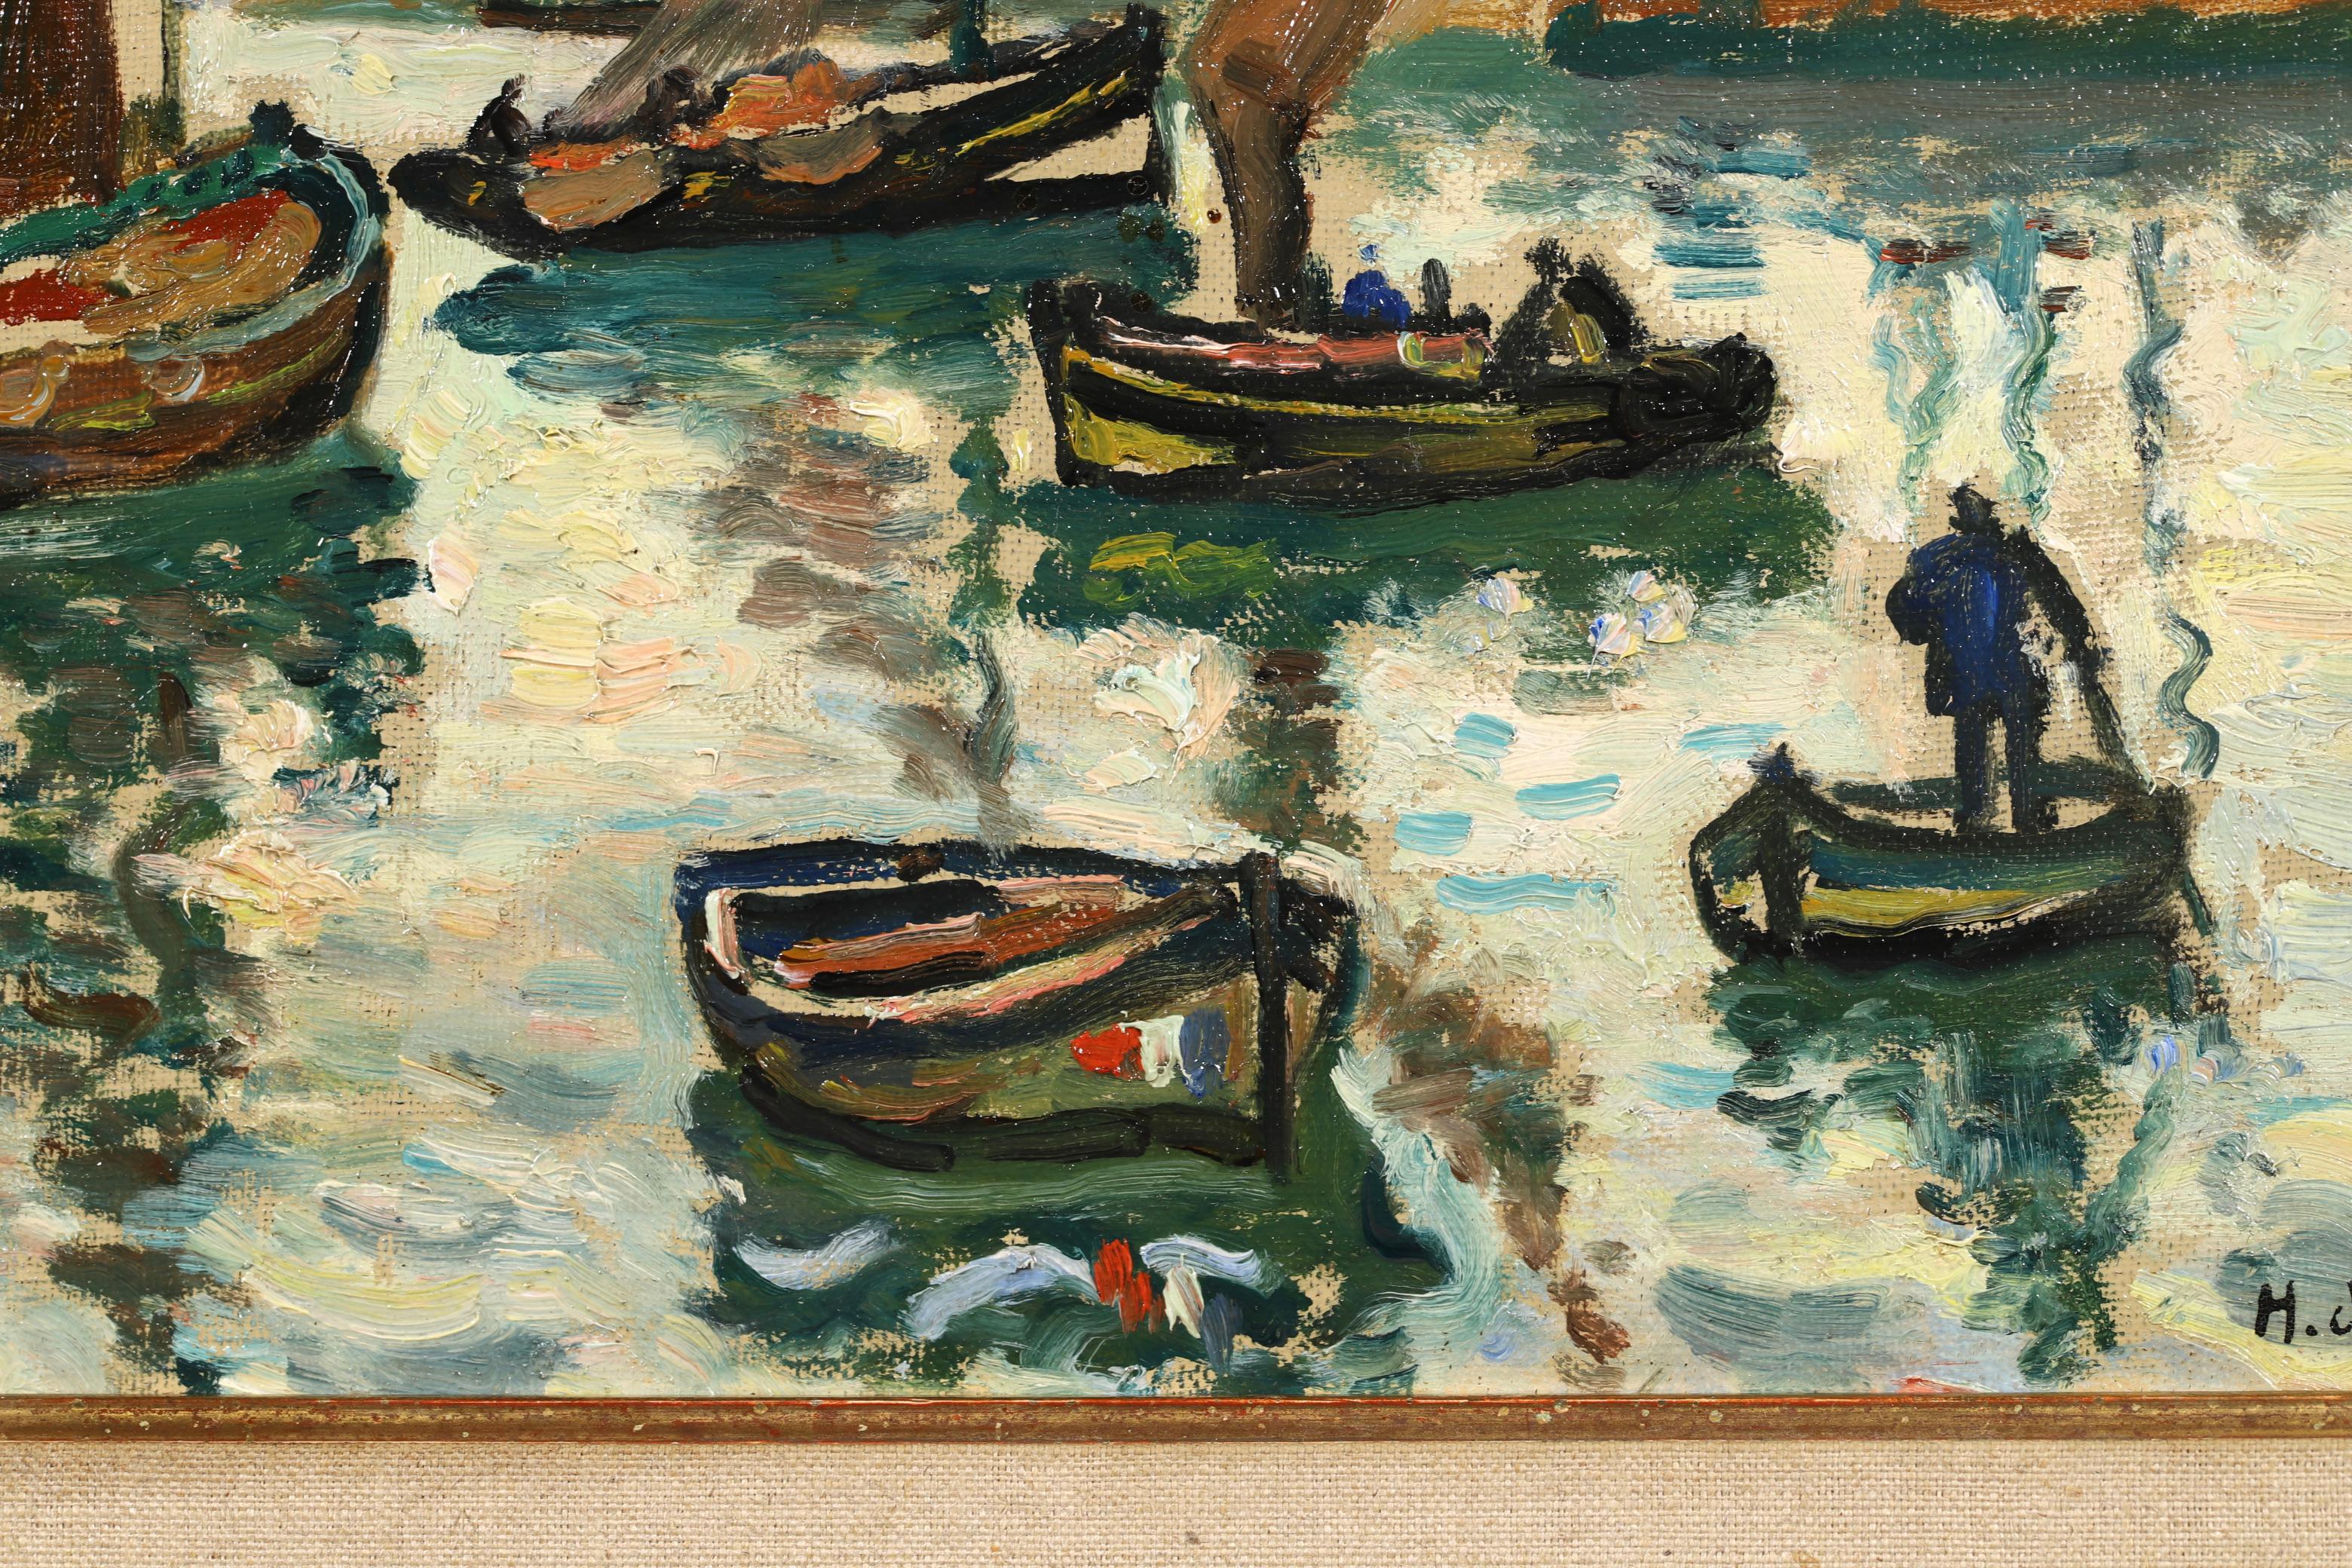 Signiert Öl auf Karton Figuren in Seelandschaft Gemälde um 1910 von Französisch Post impressionistischen Maler Henri Liénard de Saint-Délis. Das Werk zeigt Segelboote im Hafen mit der französischen Tricolore-Flagge.

Unterschrift:
Signiert unten